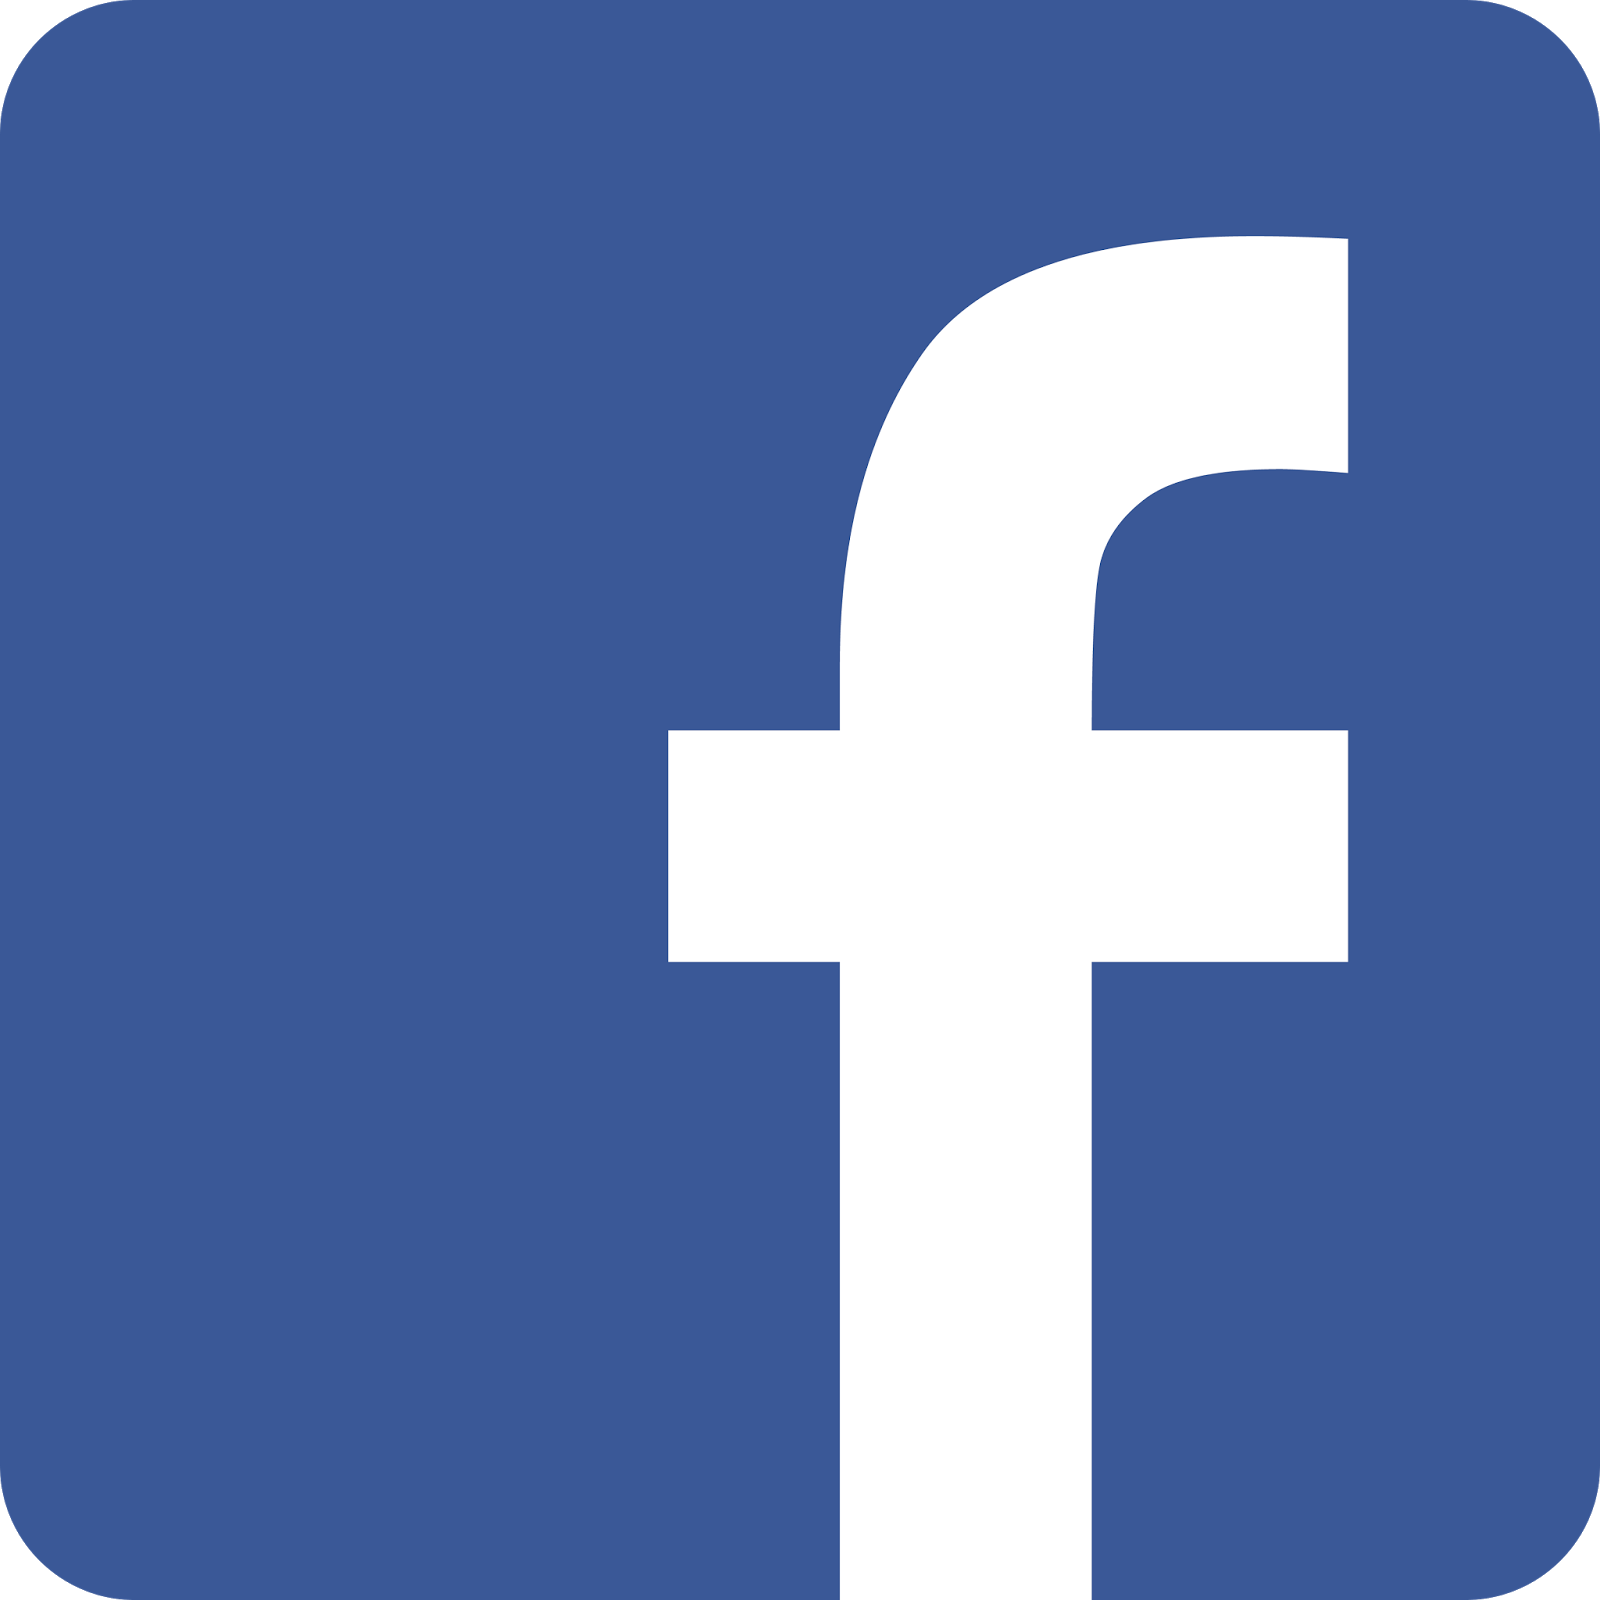 Facebook logo in circular sha